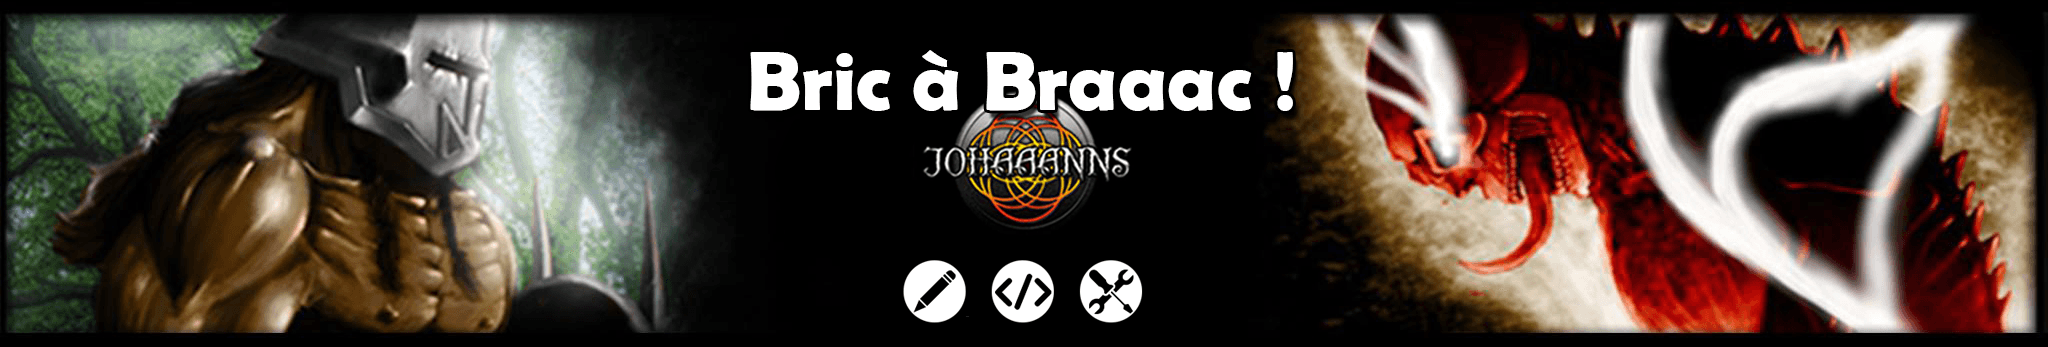 JOHAAANNS banner